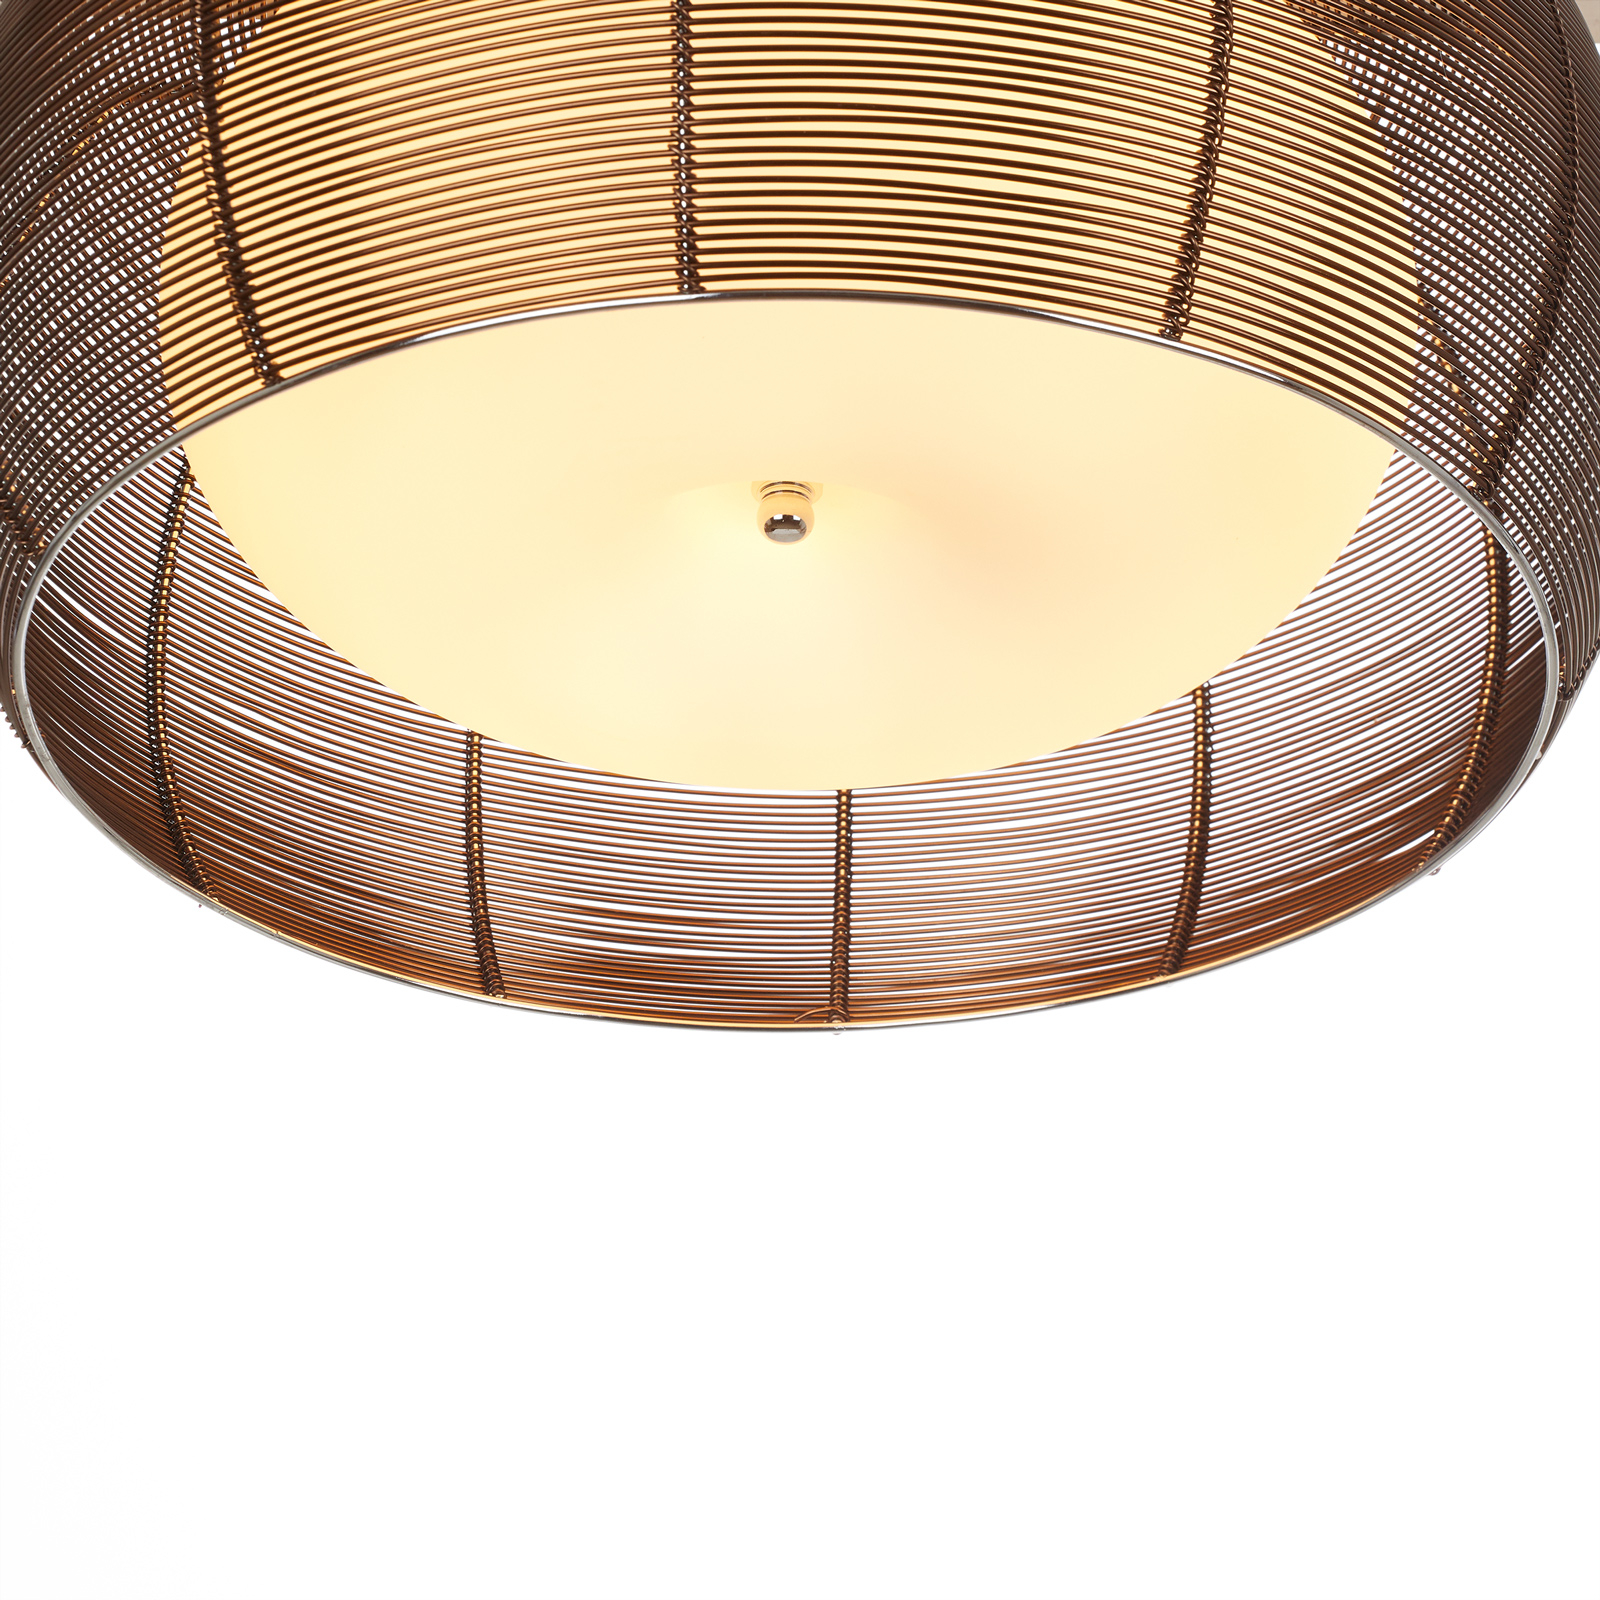 Tastefully designed ceiling light Relax bronze